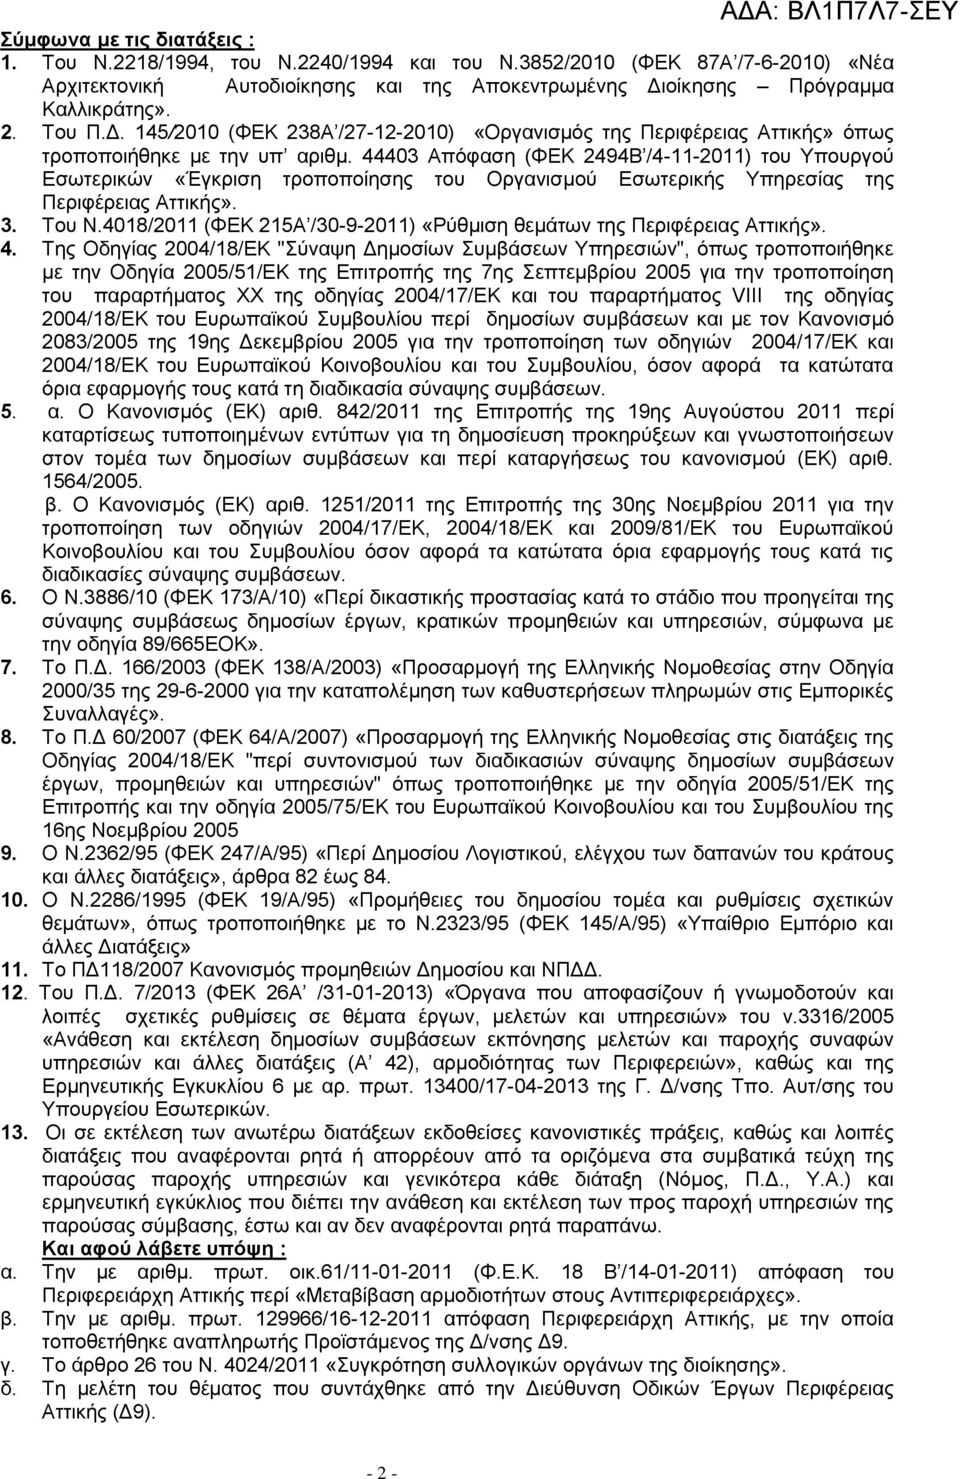 44403 Απόφαση (ΦΕΚ 2494Β /4-11-2011) του Υπουργού Εσωτερικών «Έγκριση τροποποίησης του Οργανισμού Εσωτερικής Υπηρεσίας της Περιφέρειας Αττικής». 3. Του Ν.